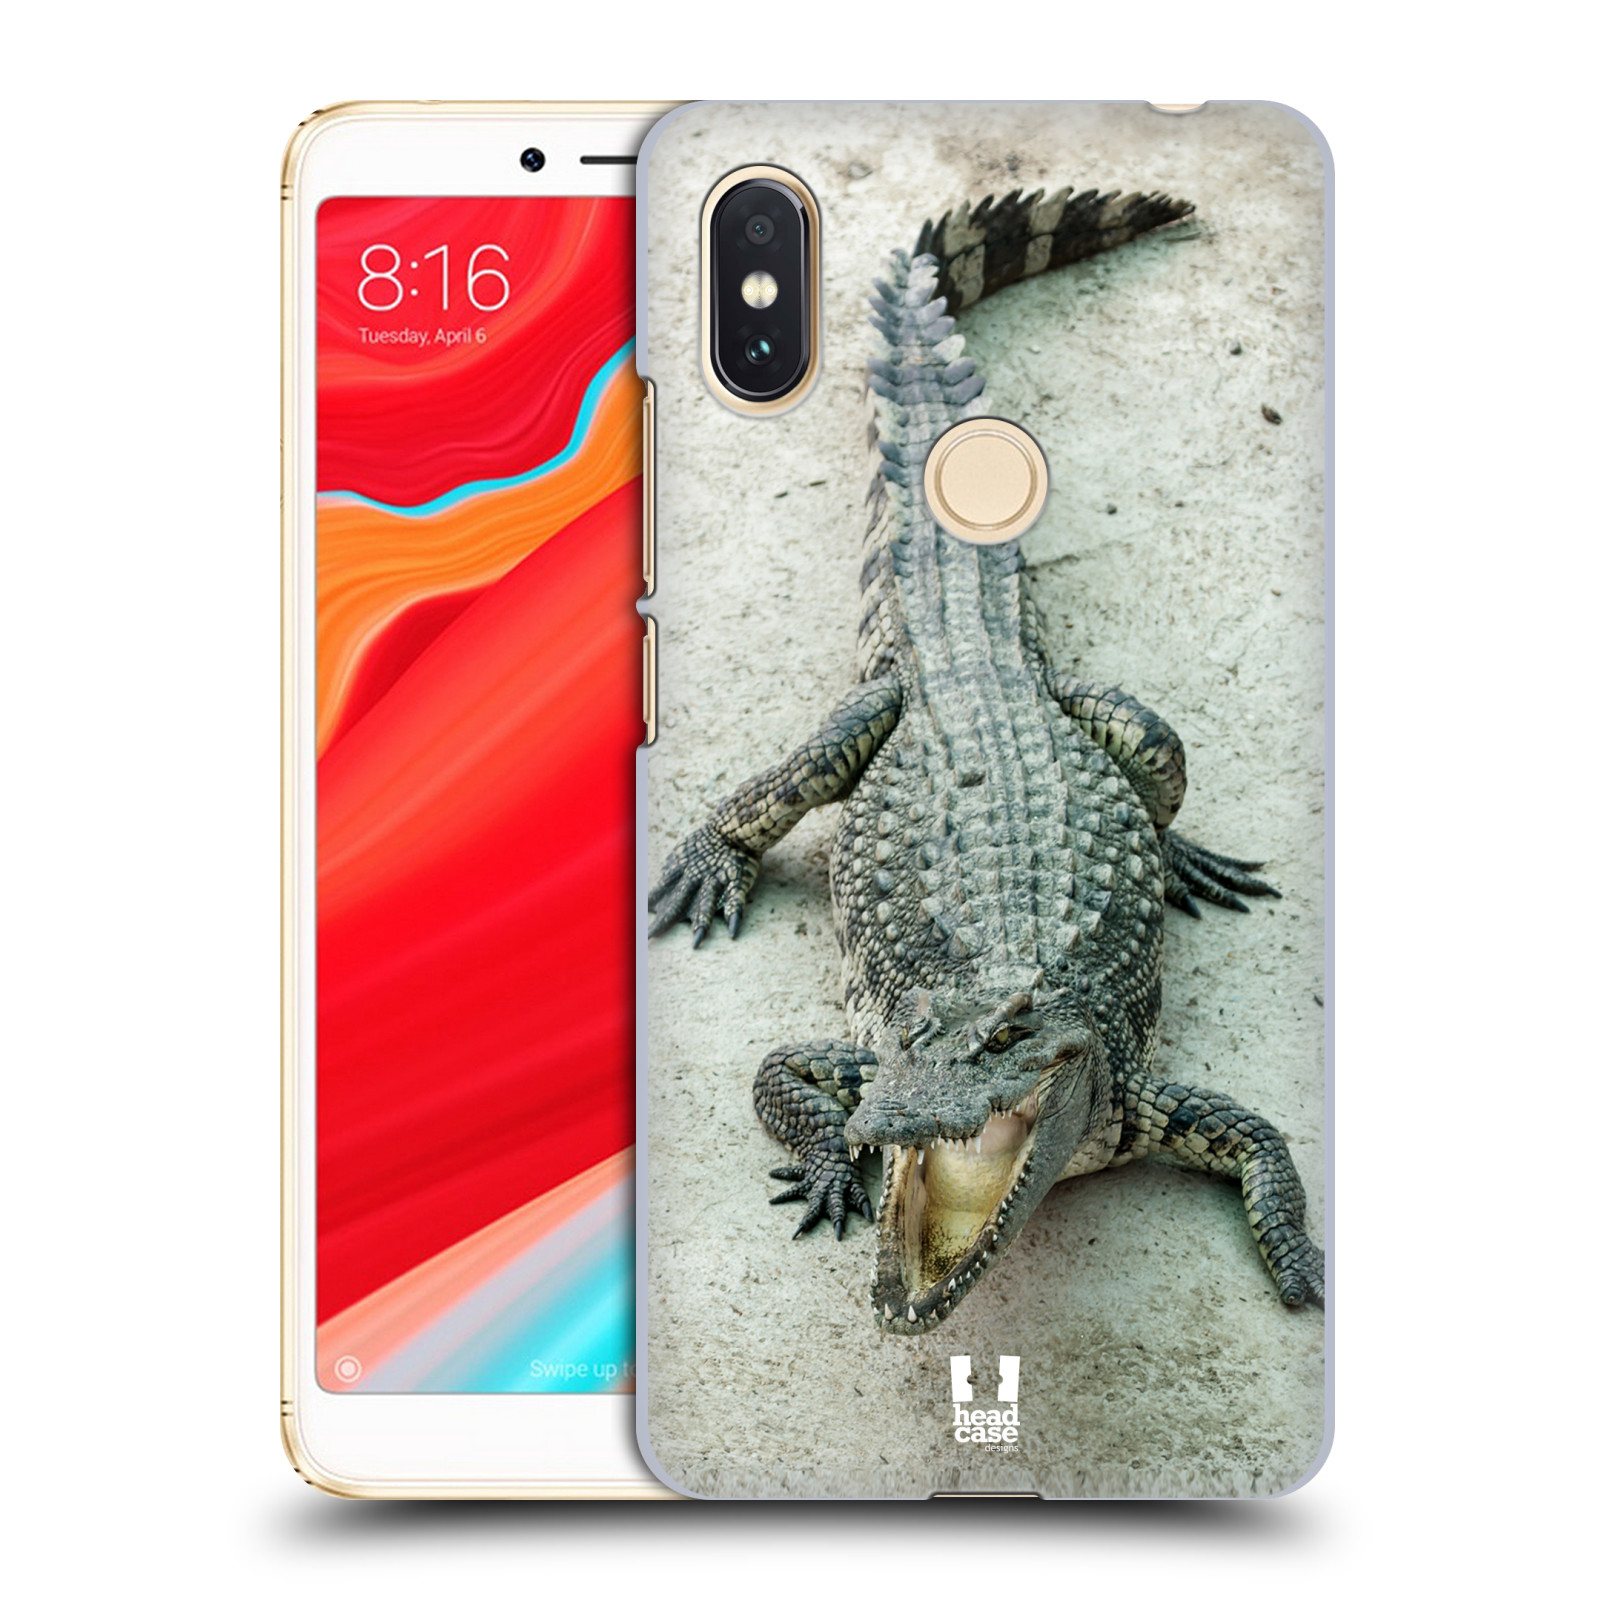 HEAD CASE plastový obal na mobil Xiaomi Redmi S2 vzor Divočina, Divoký život a zvířata foto KROKODÝL, KAJMAN